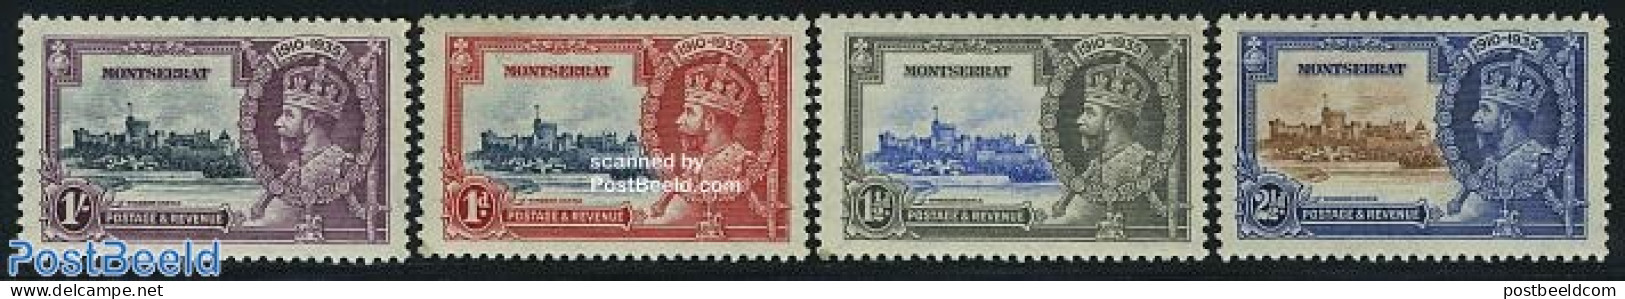 Montserrat 1935 Silver Jubilee 4v, Mint NH, History - Kings & Queens (Royalty) - Königshäuser, Adel